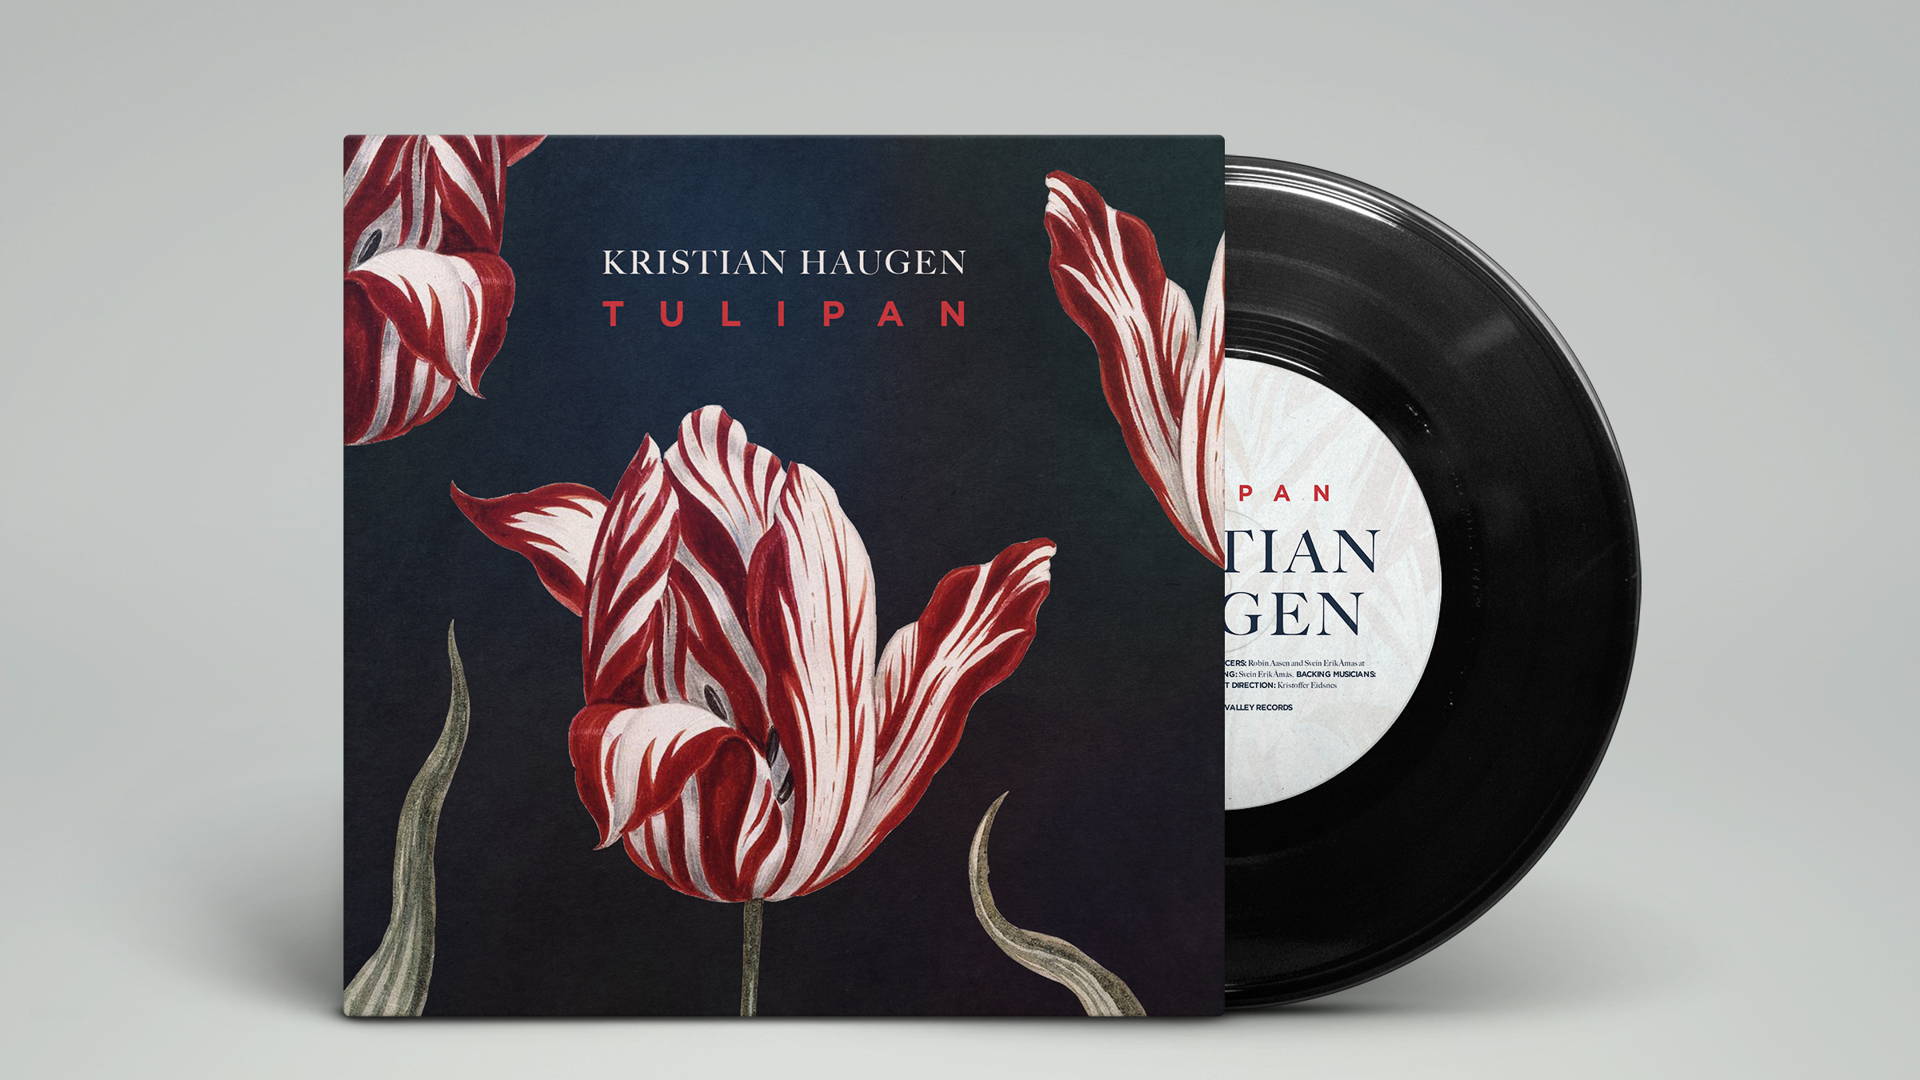 Featured image for Kristian Haugen's Tulipan Album Cover